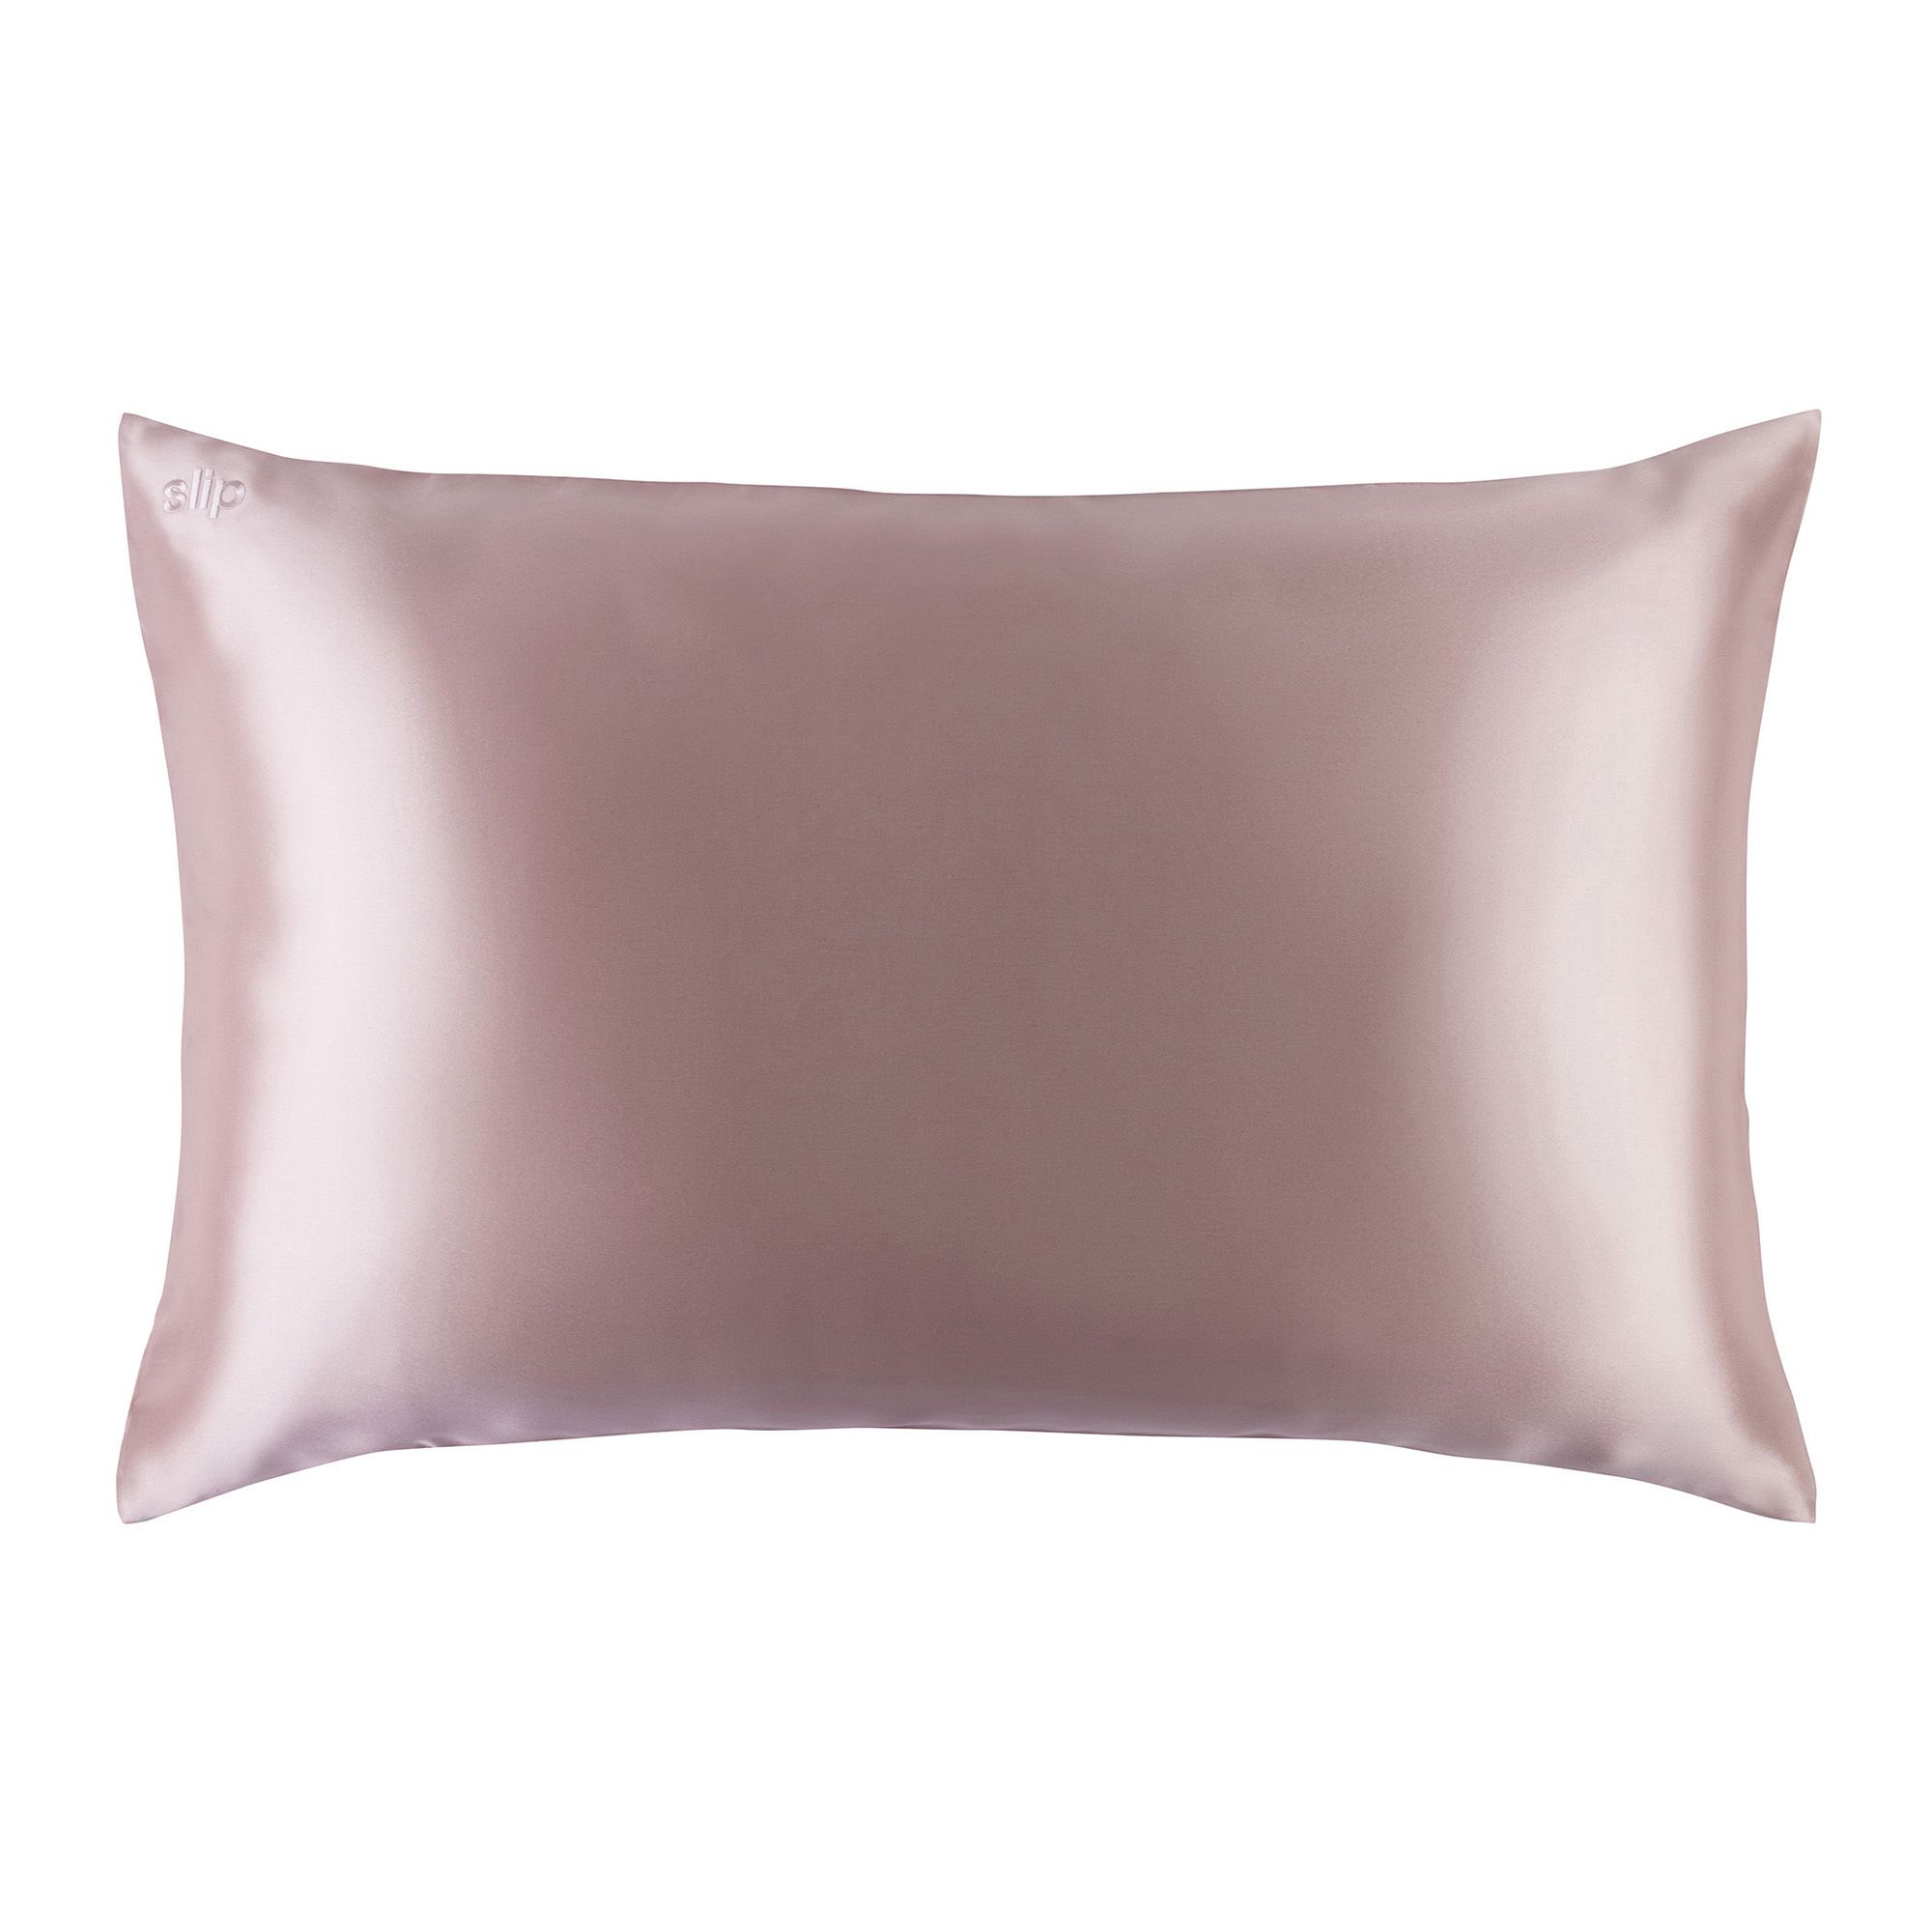 Slip Pure Silk Queen Pillowcase - Pink - Walmart.com | Walmart (US)